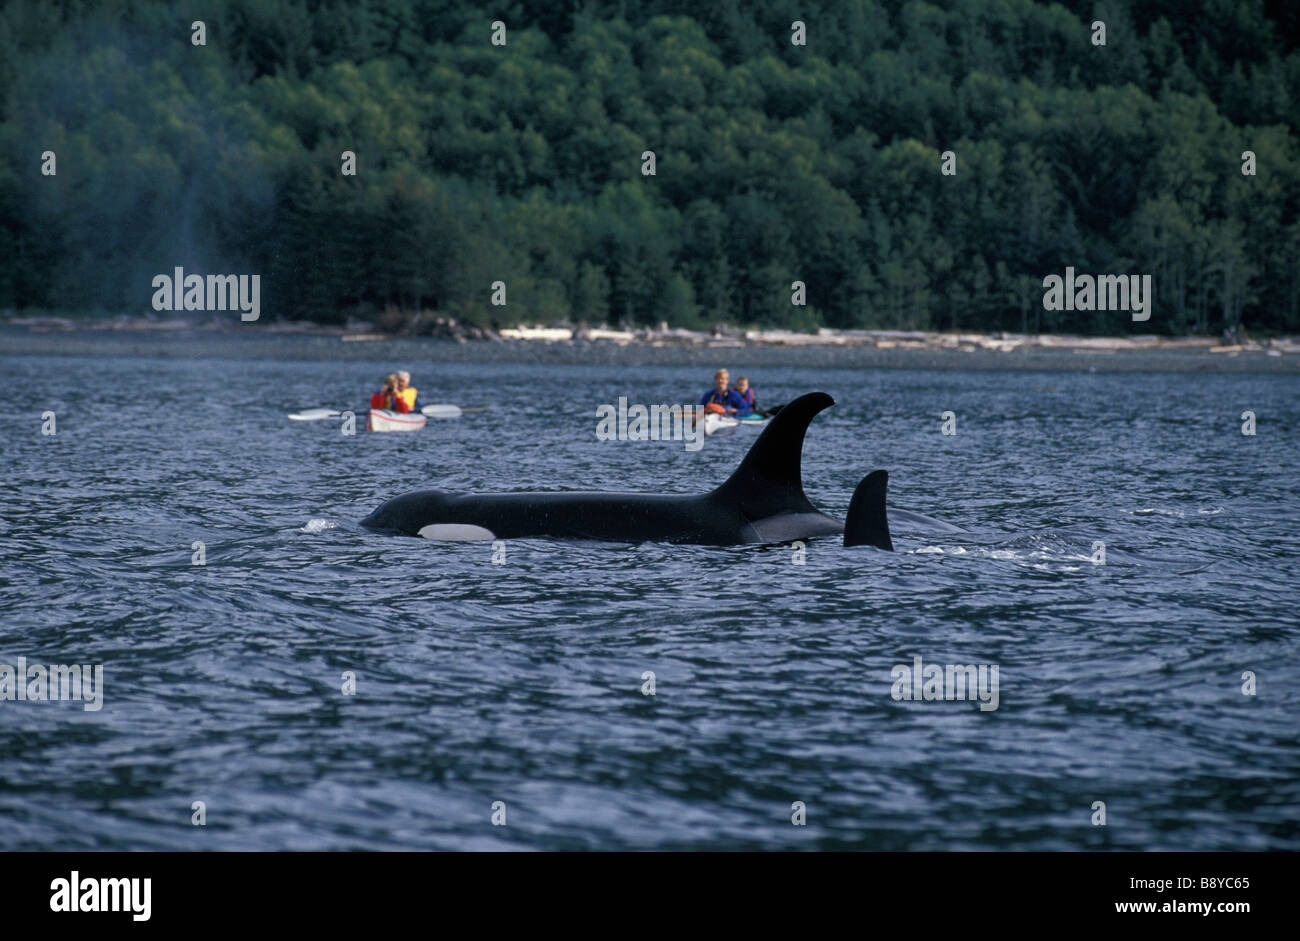 Espèces en danger orque CANADA Colombie-Britannique Orca d'Orques passant de l'eau seules actions Action speci Antarctique Banque D'Images